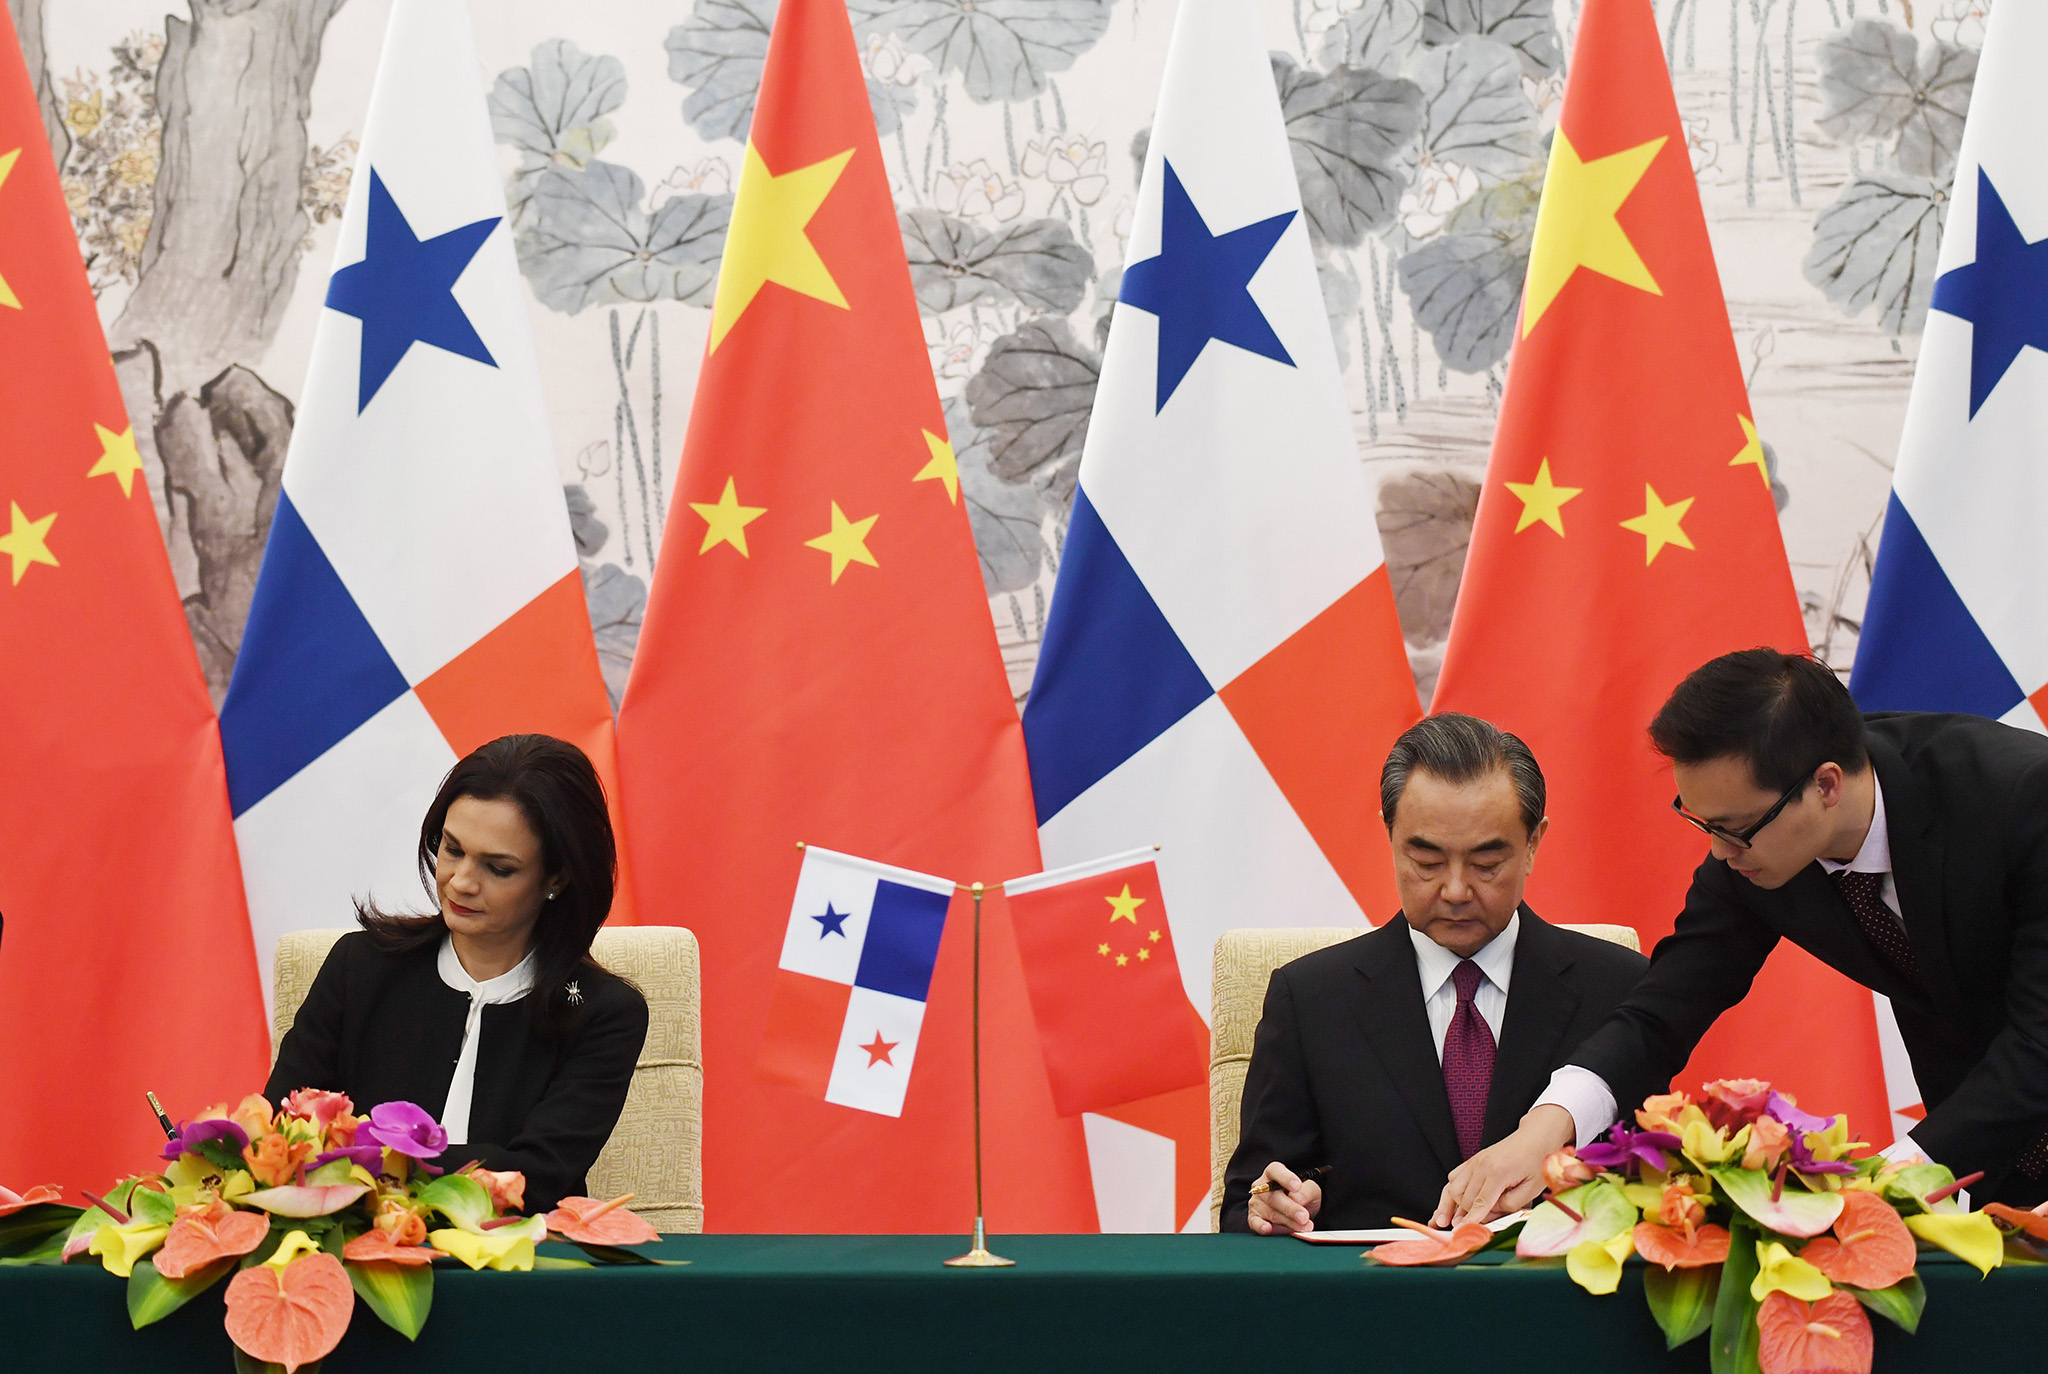 Diplomacia | Panamá aproxima-se da China e corta relações com Taiwan